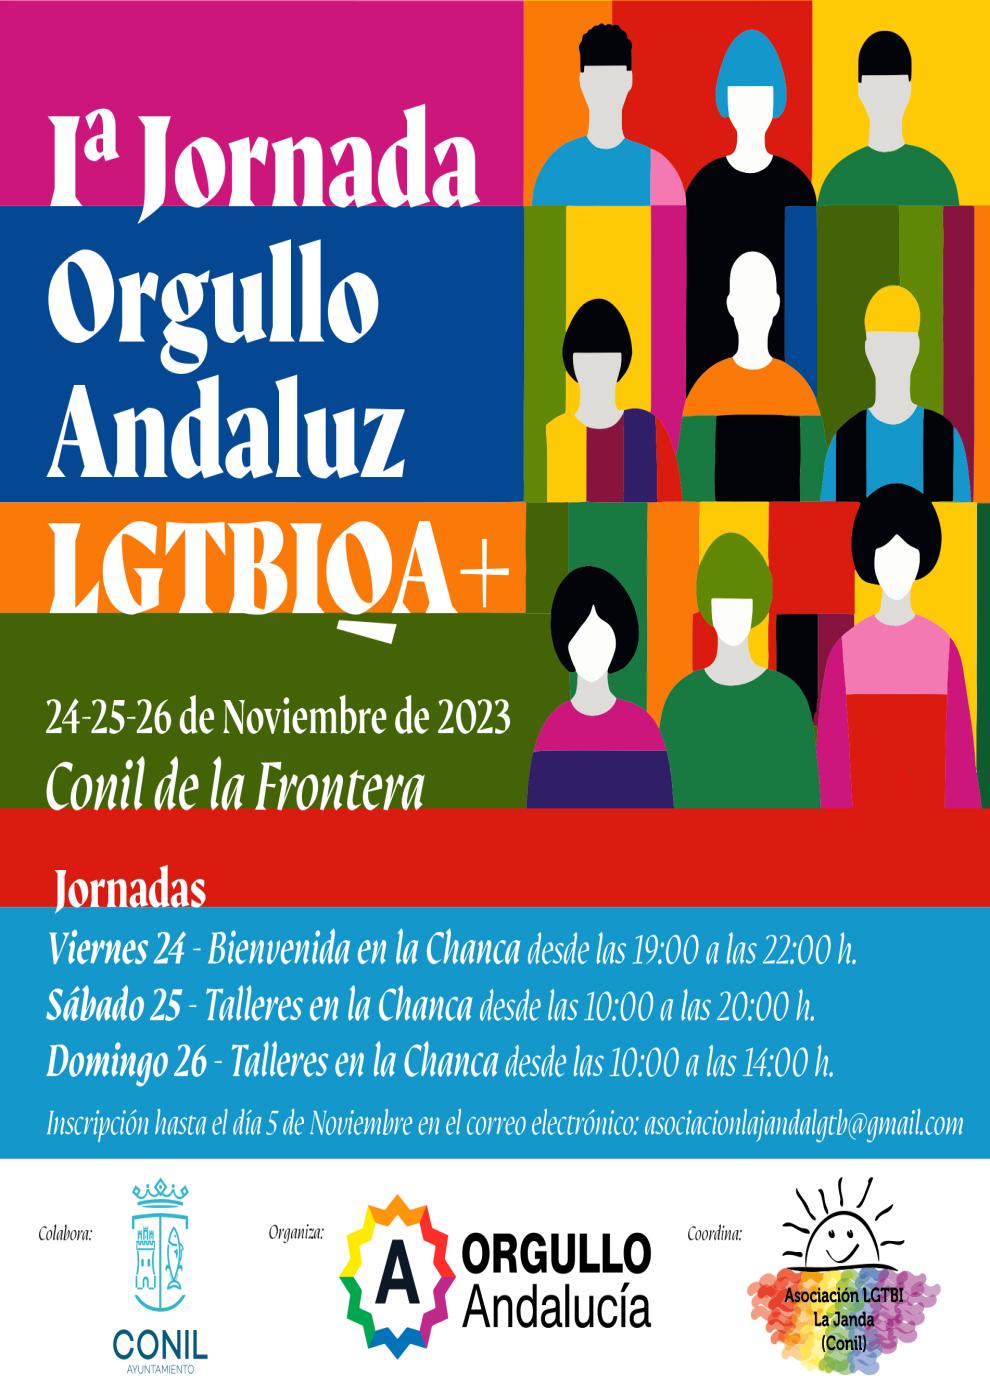 I Jornada orgullo andaluz LGTBIQA+. Del 24 al 26 de noviembre.